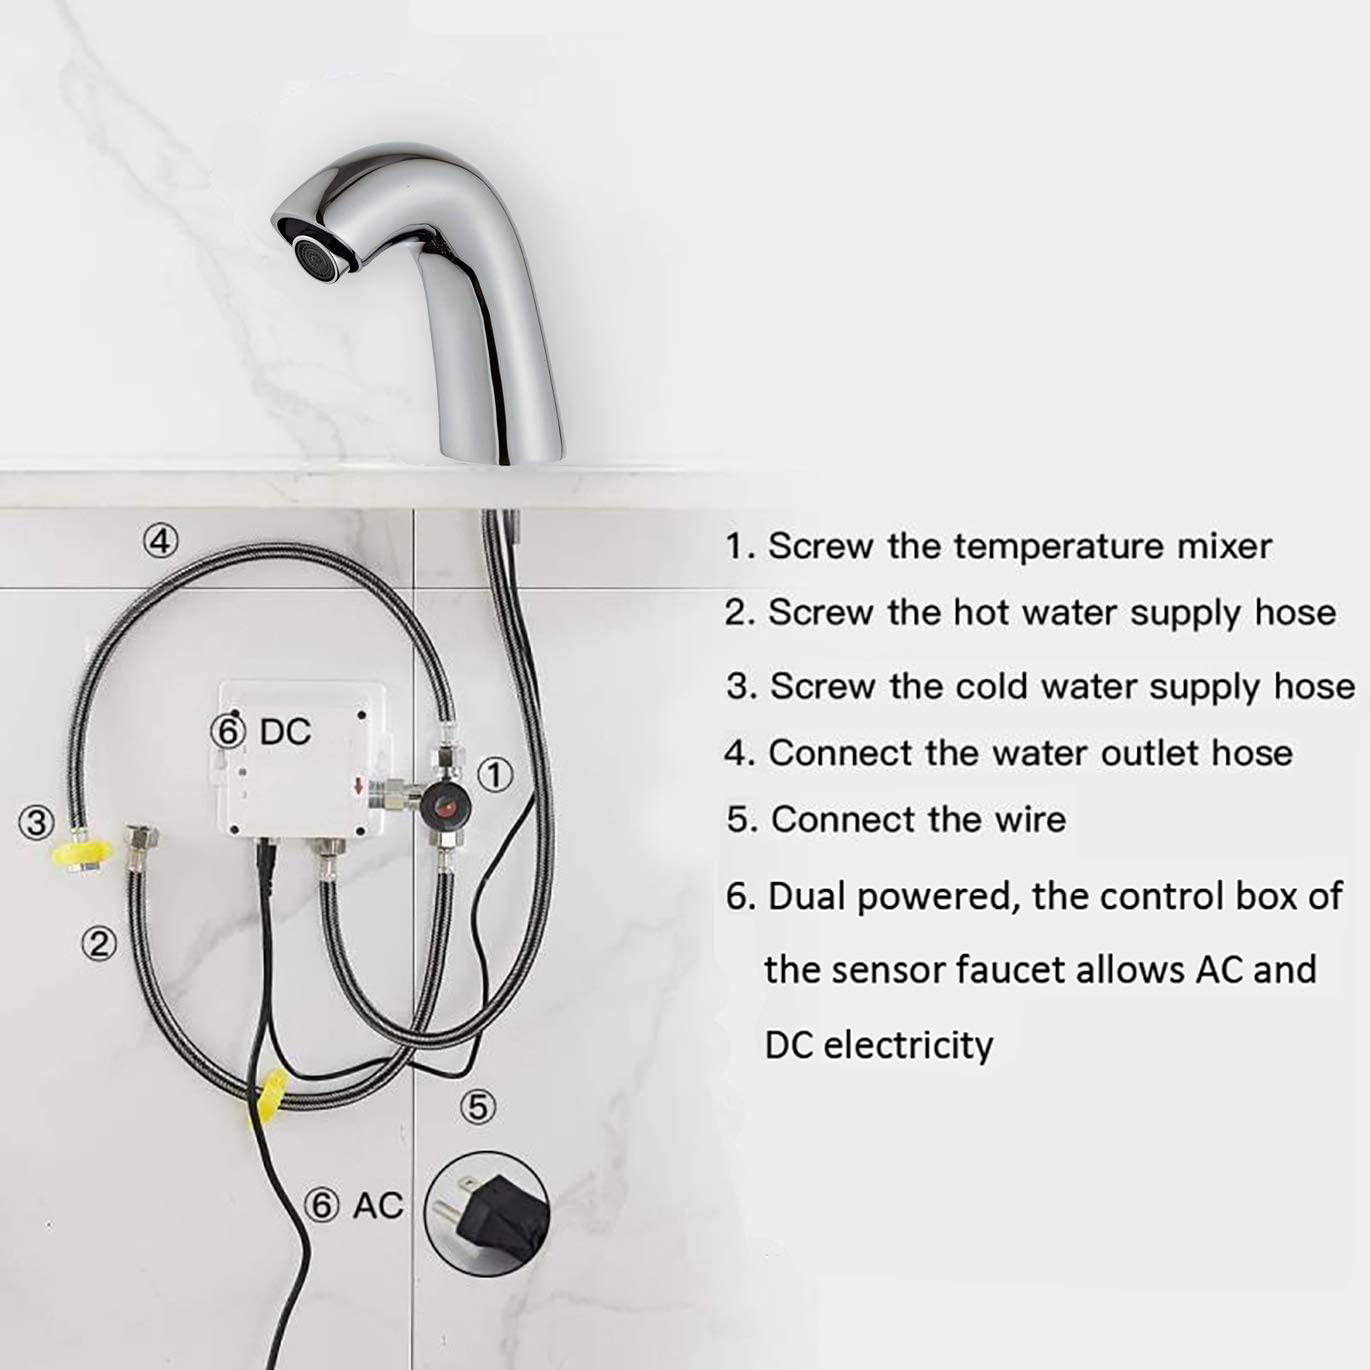 Автоматический сенсорный бесконтактный хромированный смеситель для раковины в ванной комнате с блоком управления и смесителем температуры